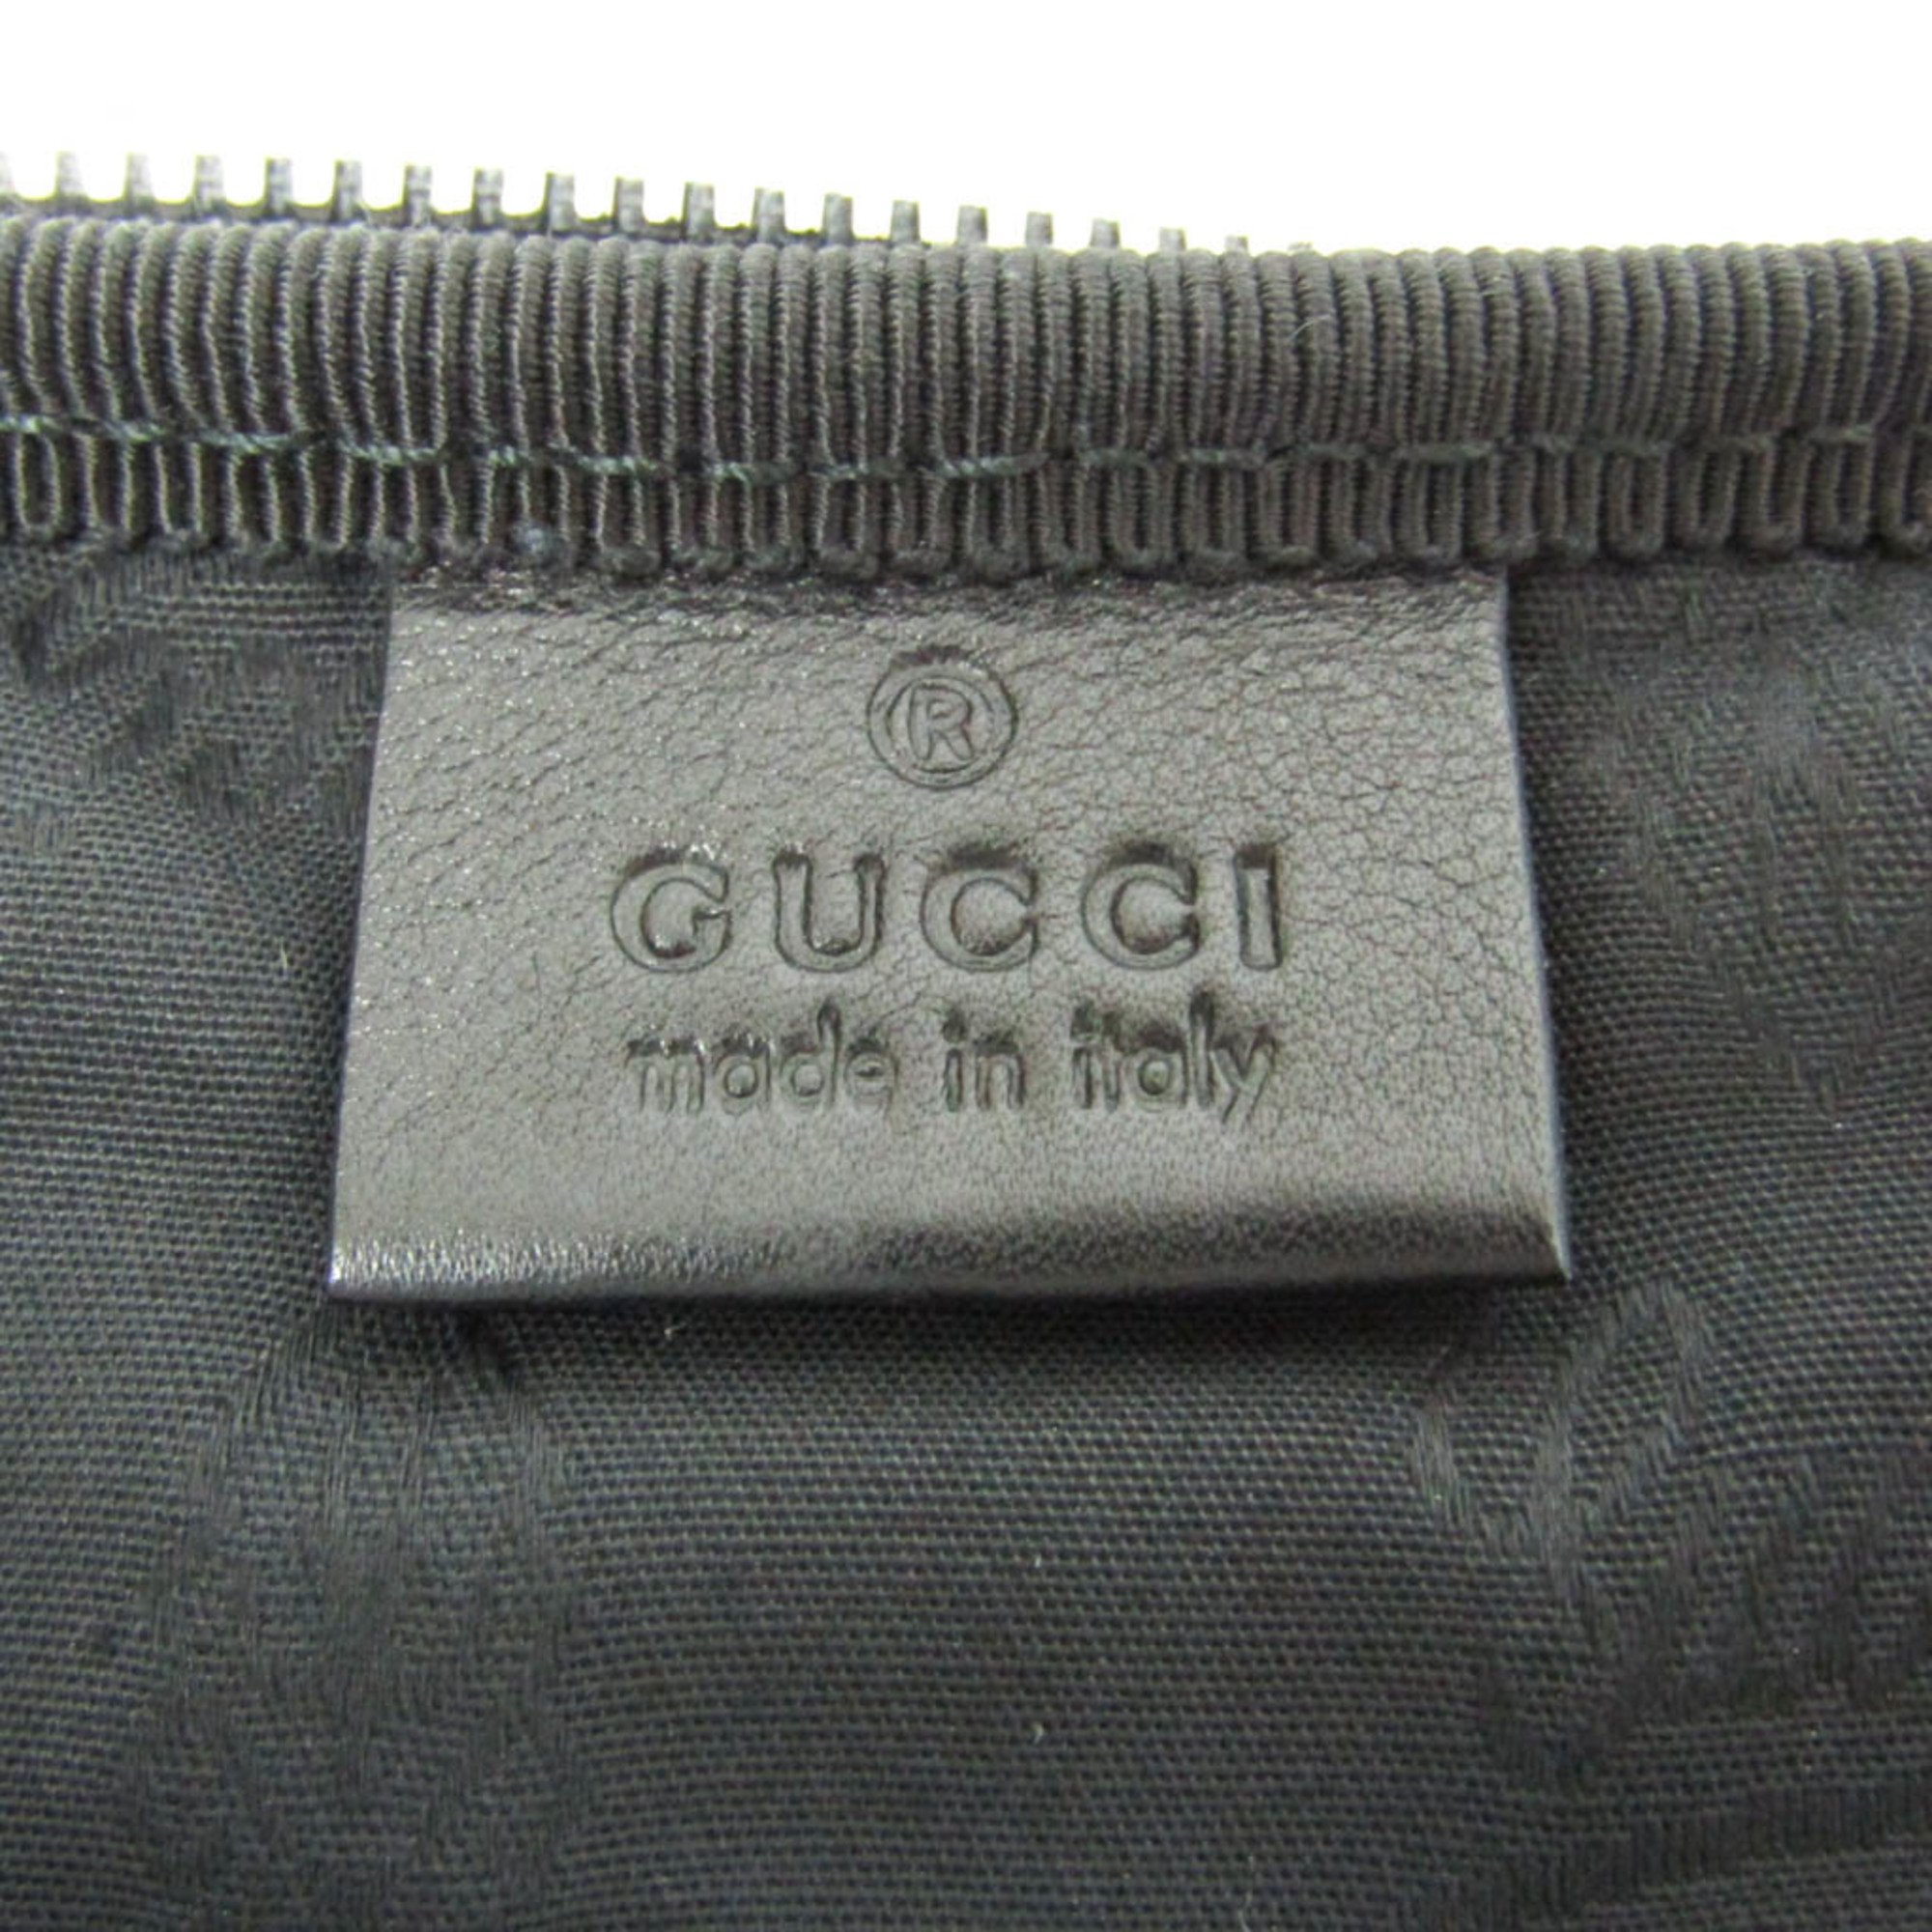 グッチ(Gucci) Limited Edition ネクタイケース 268114 メンズ 